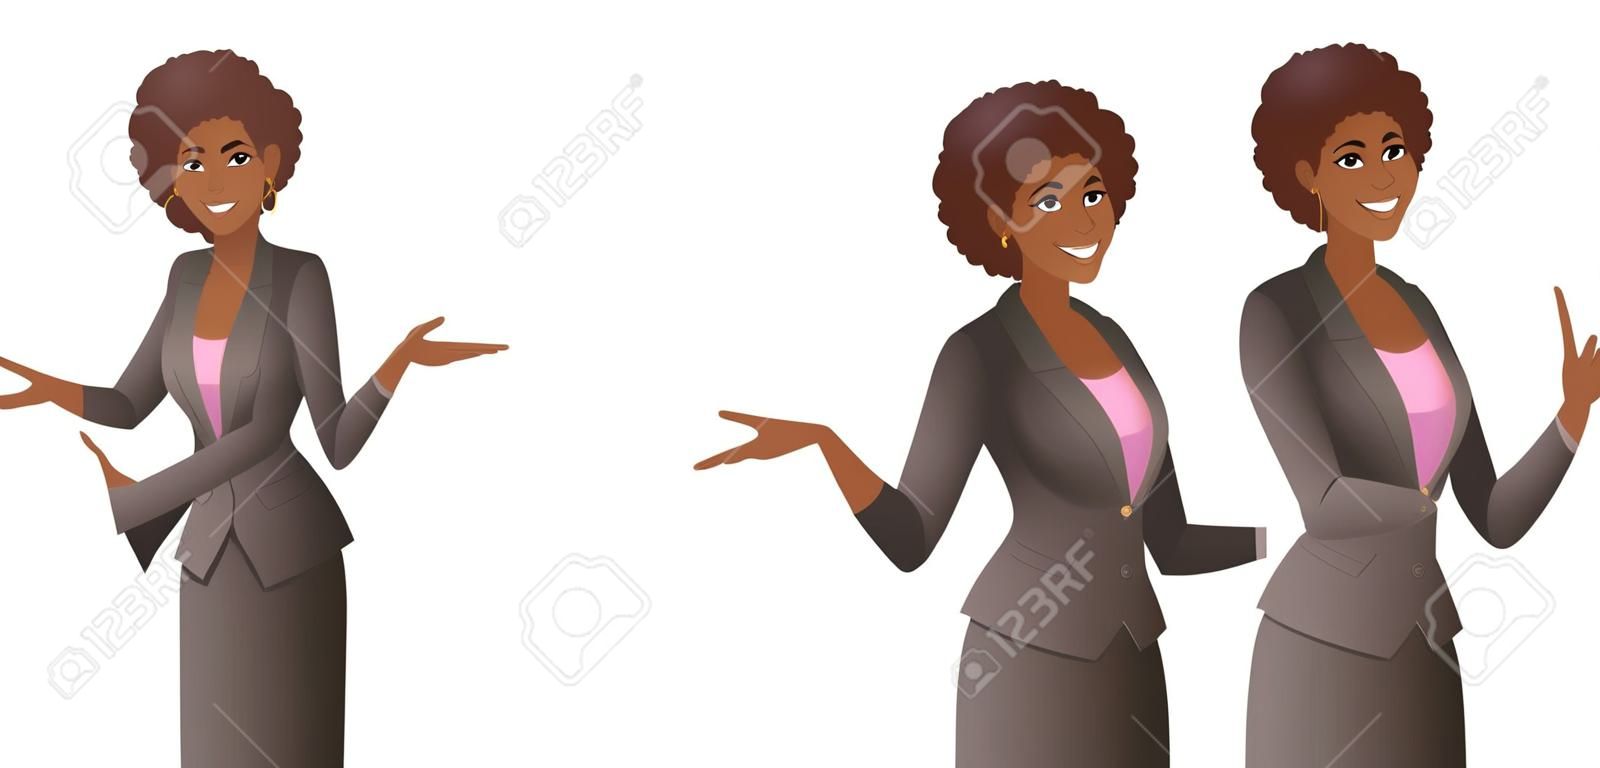 La donna africana che indossa la tuta indica qualcosa. Giovani donne sveglie sorridenti con il puntatore e il gesto dimostrativo. Illustrazione vettoriale isolata su sfondo bianco.